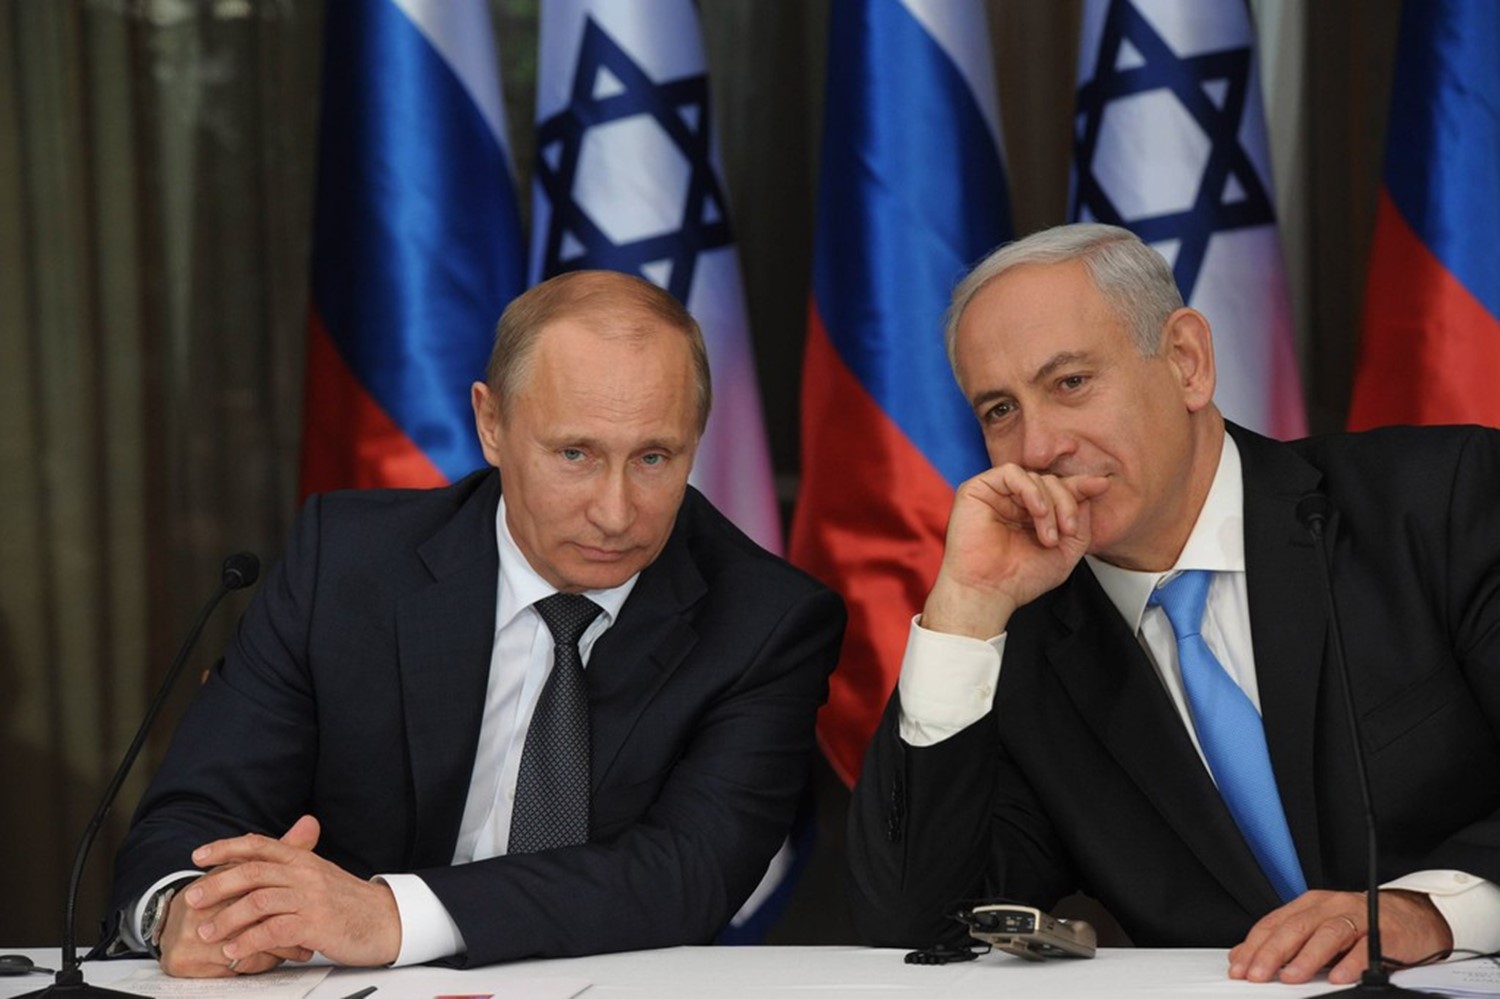 موسكو: أمن إسرائيل من أولوياتنا.. وإيران ليست حليفتنا